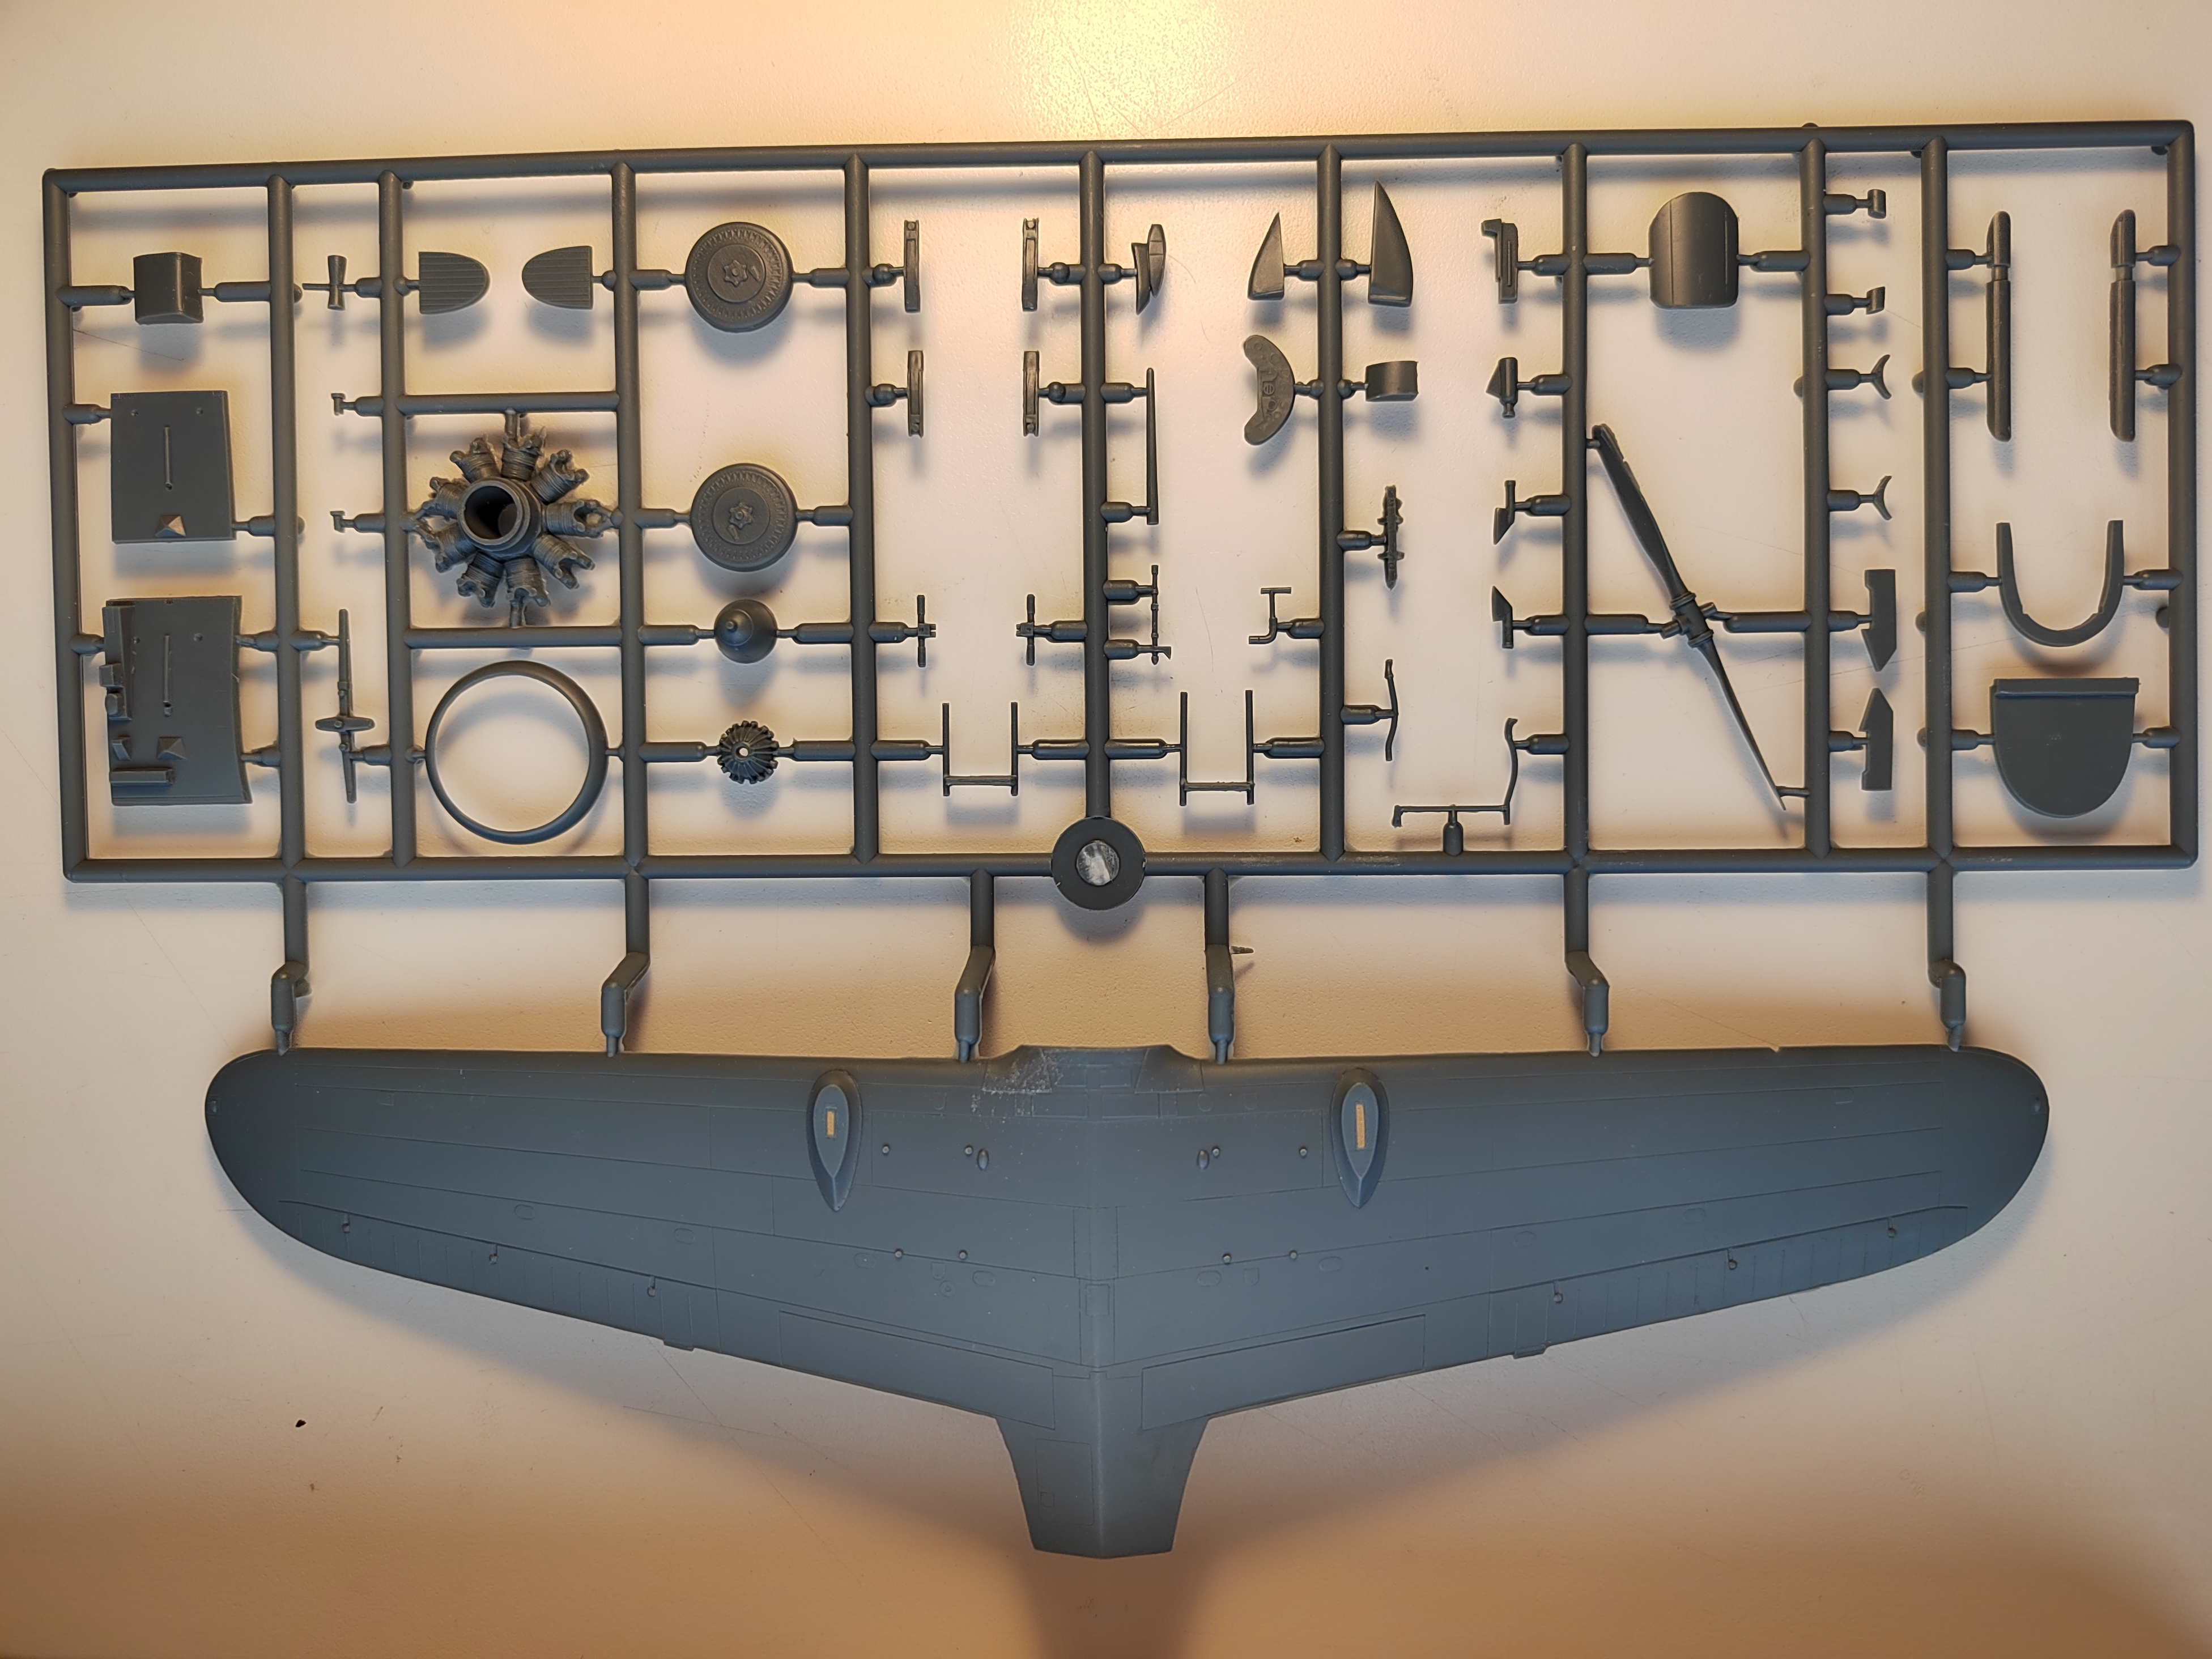 Обзор модели RS Models Manshu Ki-79B в масштабе 1/48